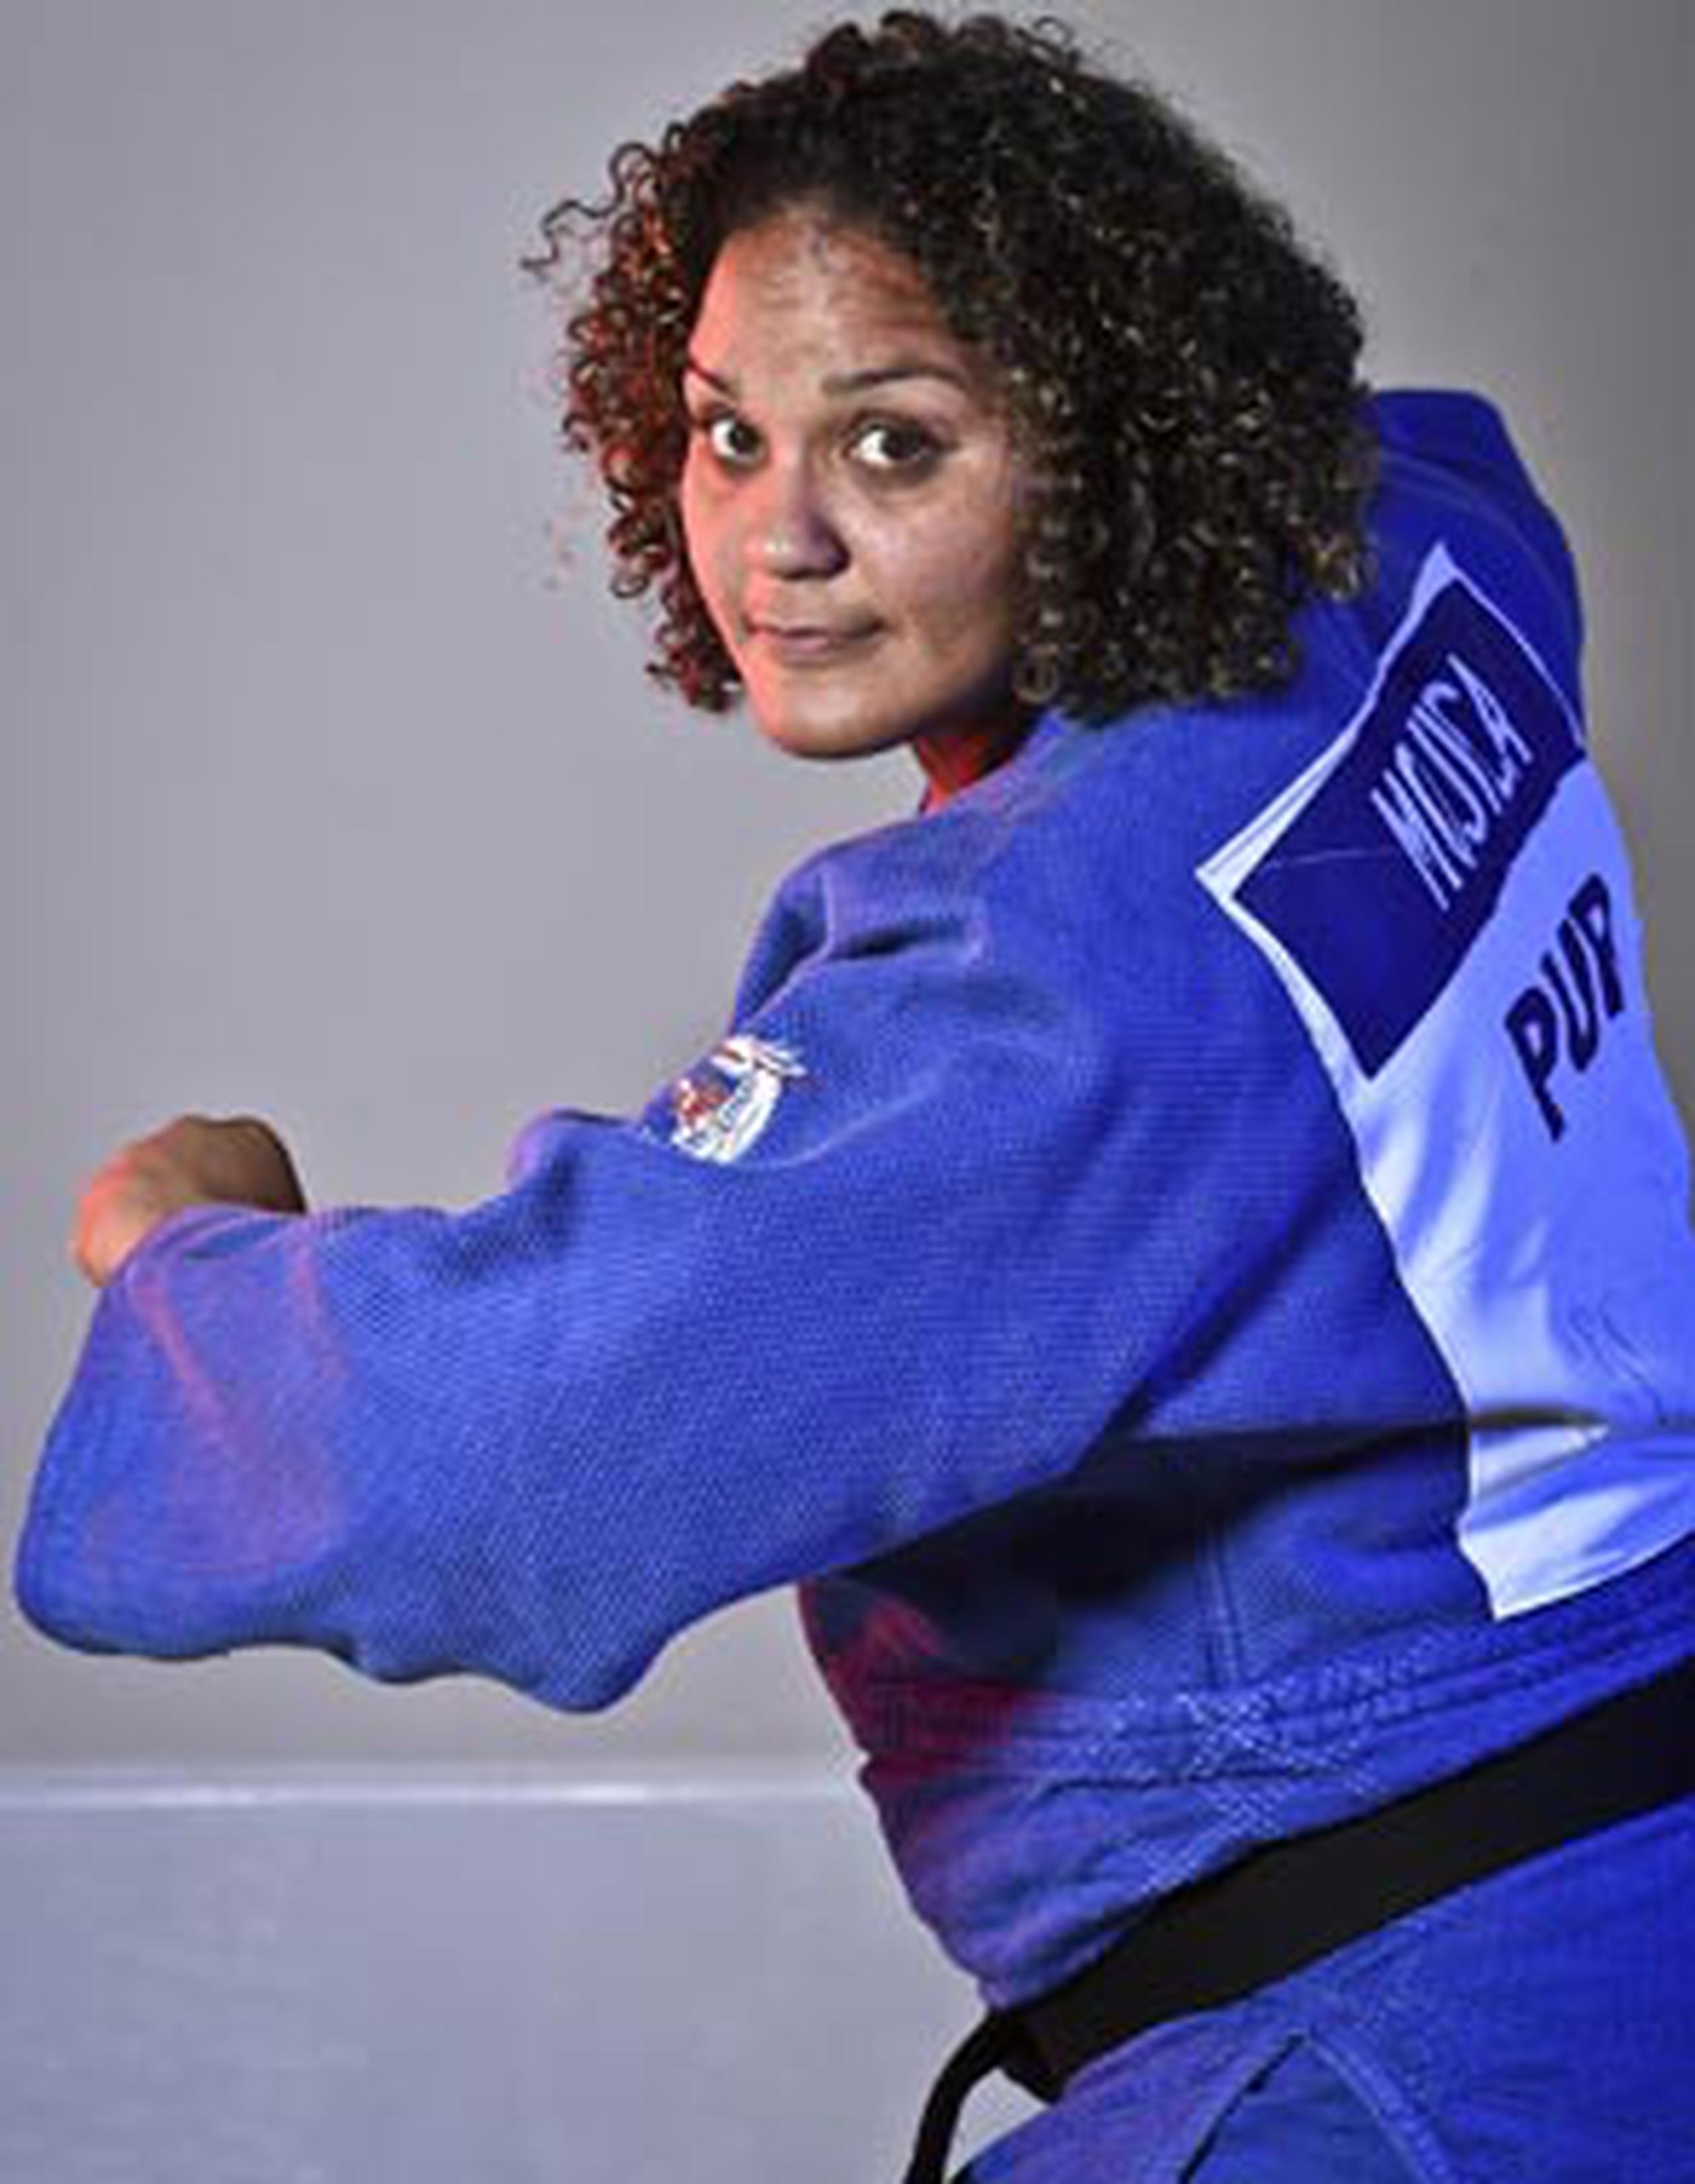 Melissa Mojica sale a competir en sus segundos Juegos Olímpicos. La judoca es solo una de varios atletas boricuas que saldrán hoy a batallar por Puerto Rico. (Archivo)